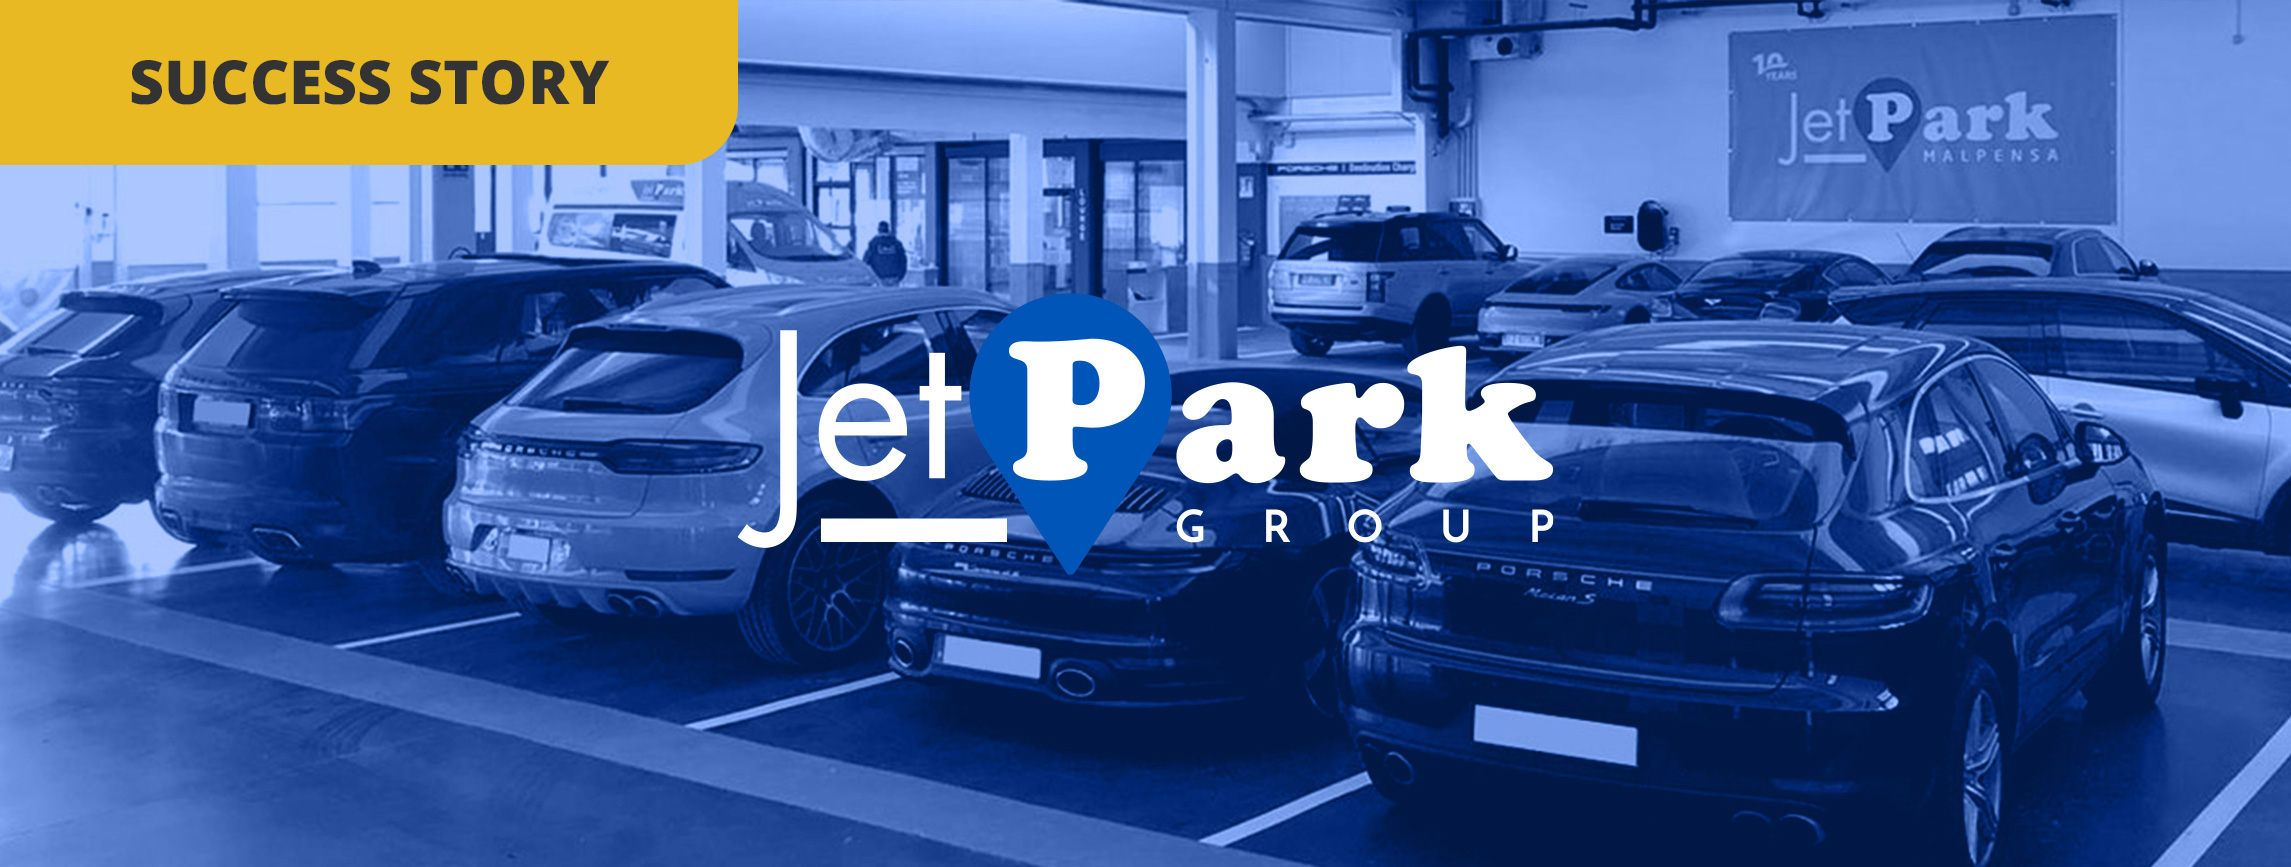  Con oltre 300 recensioni raccolte in soli due mesi, non vorresti scoprire il segreto di JetPark?